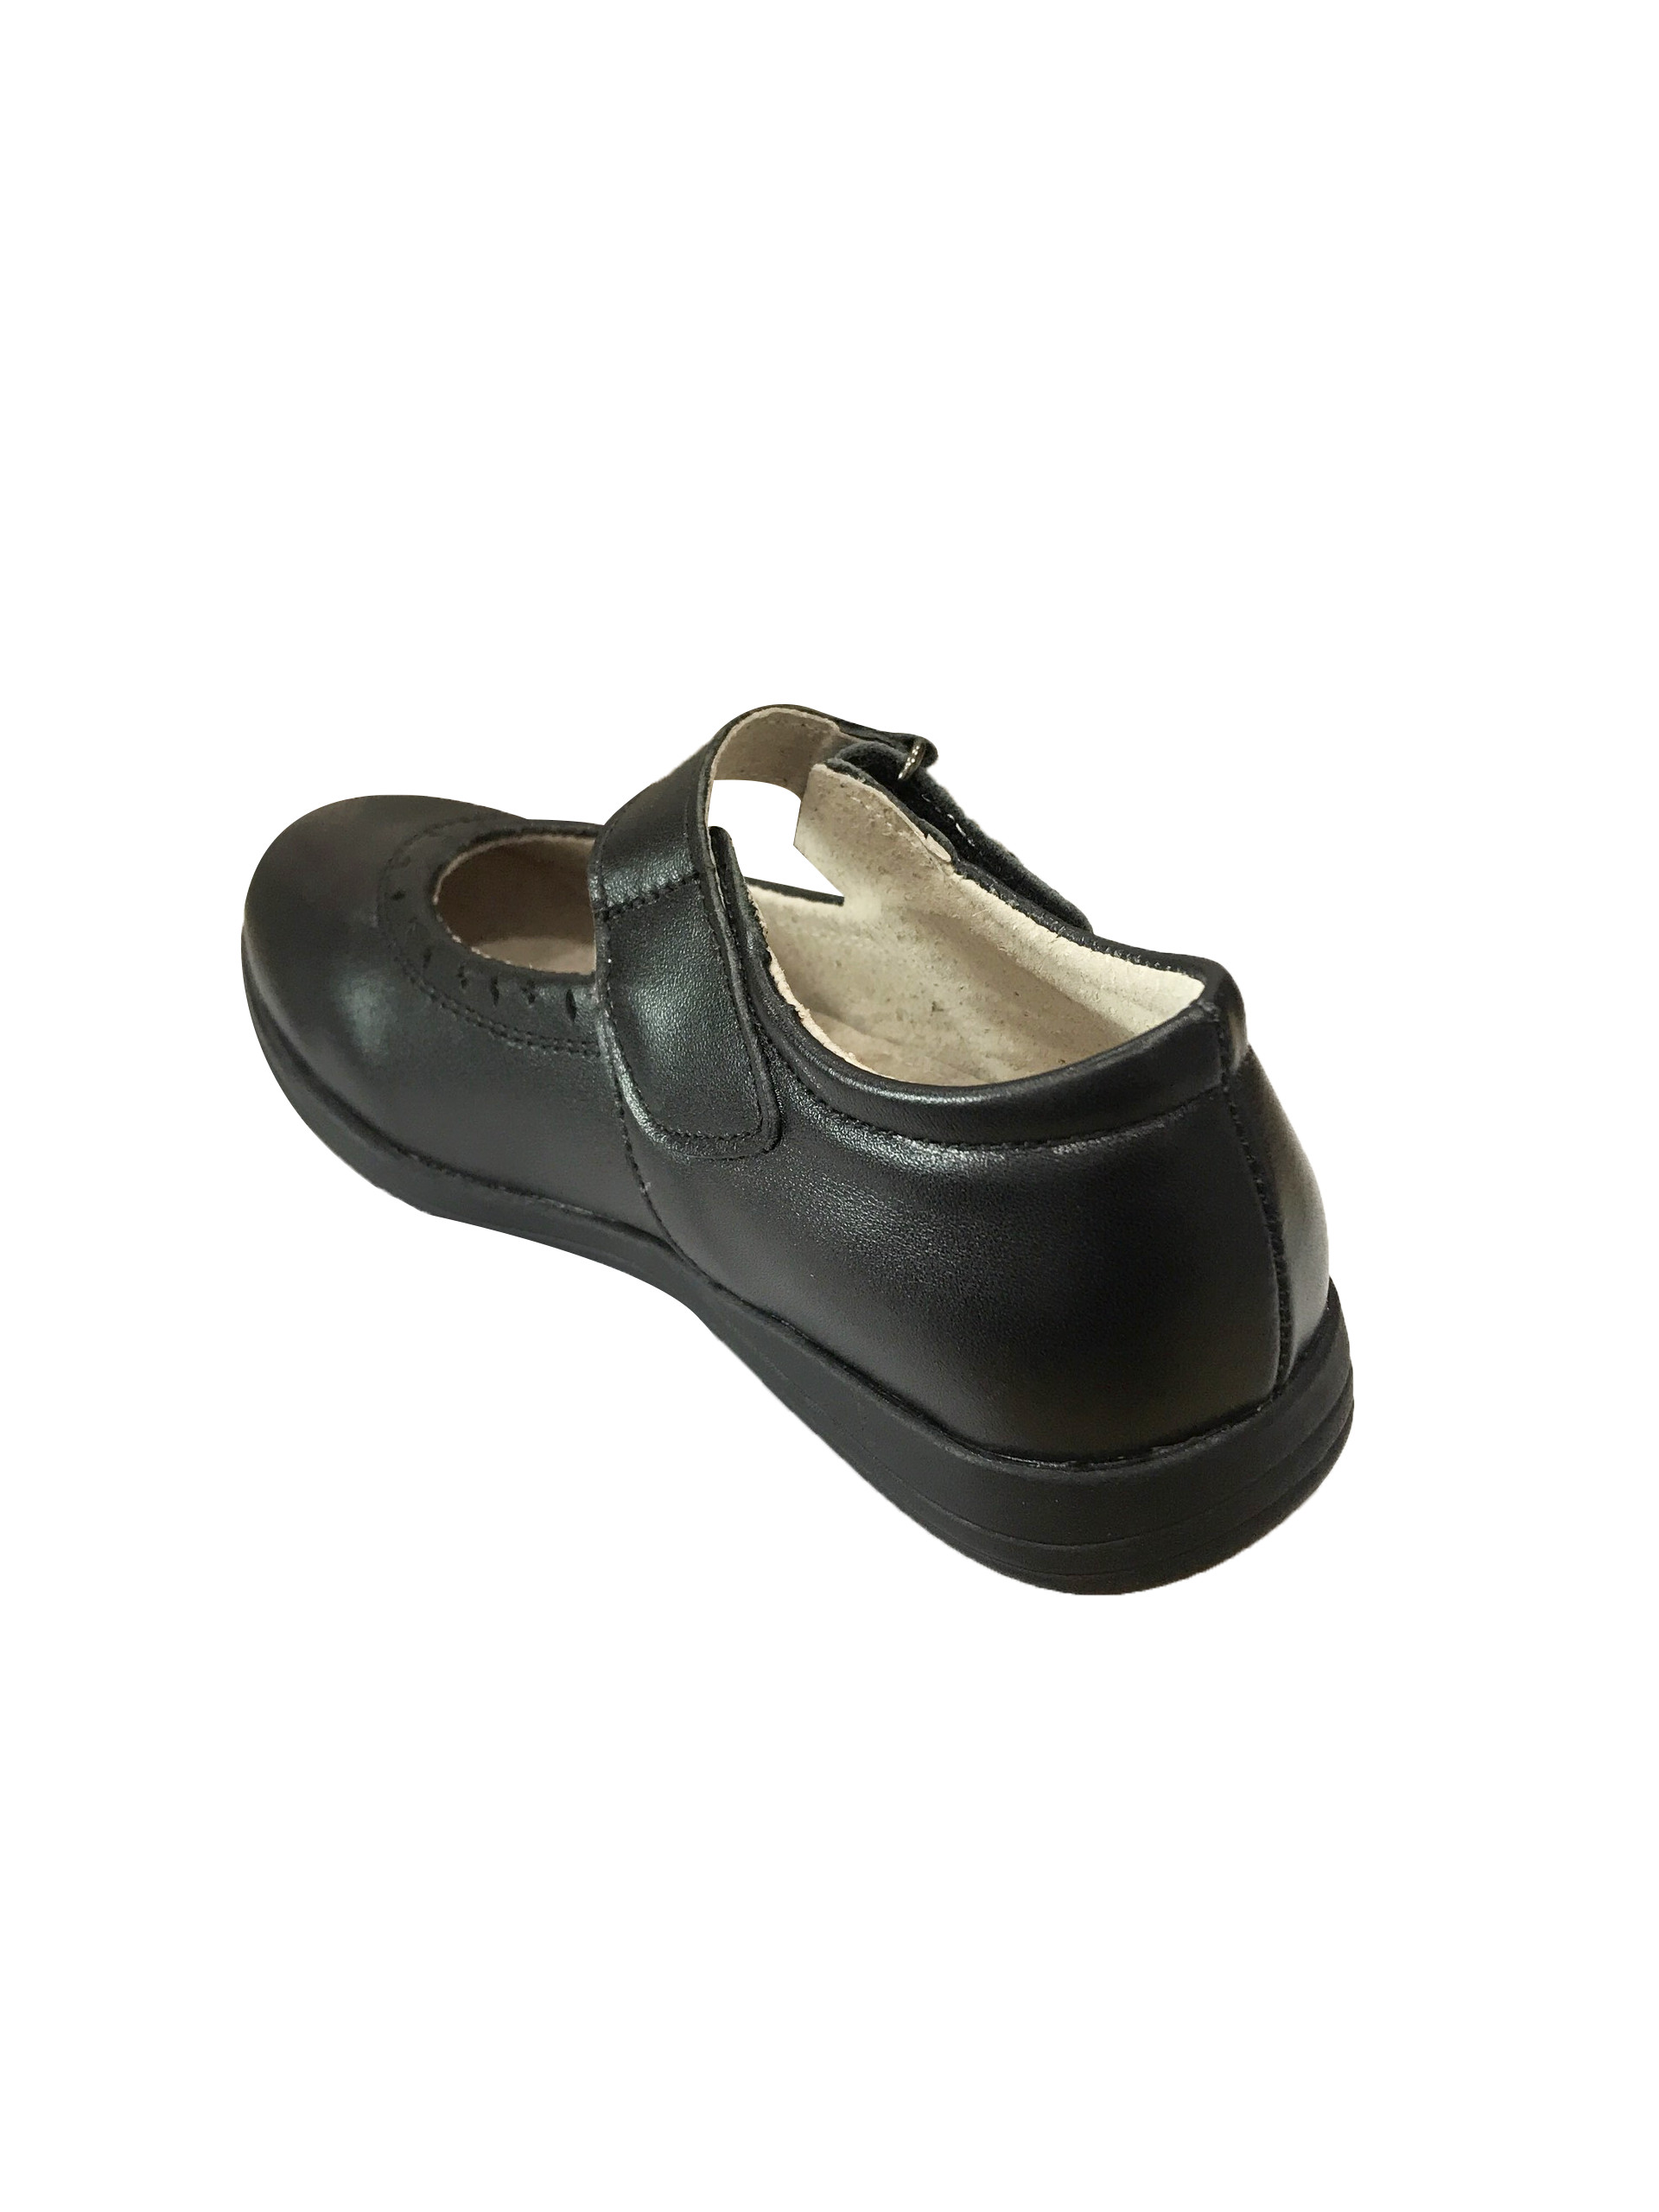 Giày Búp Bê Đi Học Bé Gái Crown Space UK School Shoes CRUK3040 Cao Cấp Nhẹ Êm Thoáng Mát Size 28-36/4-14 Tuổi